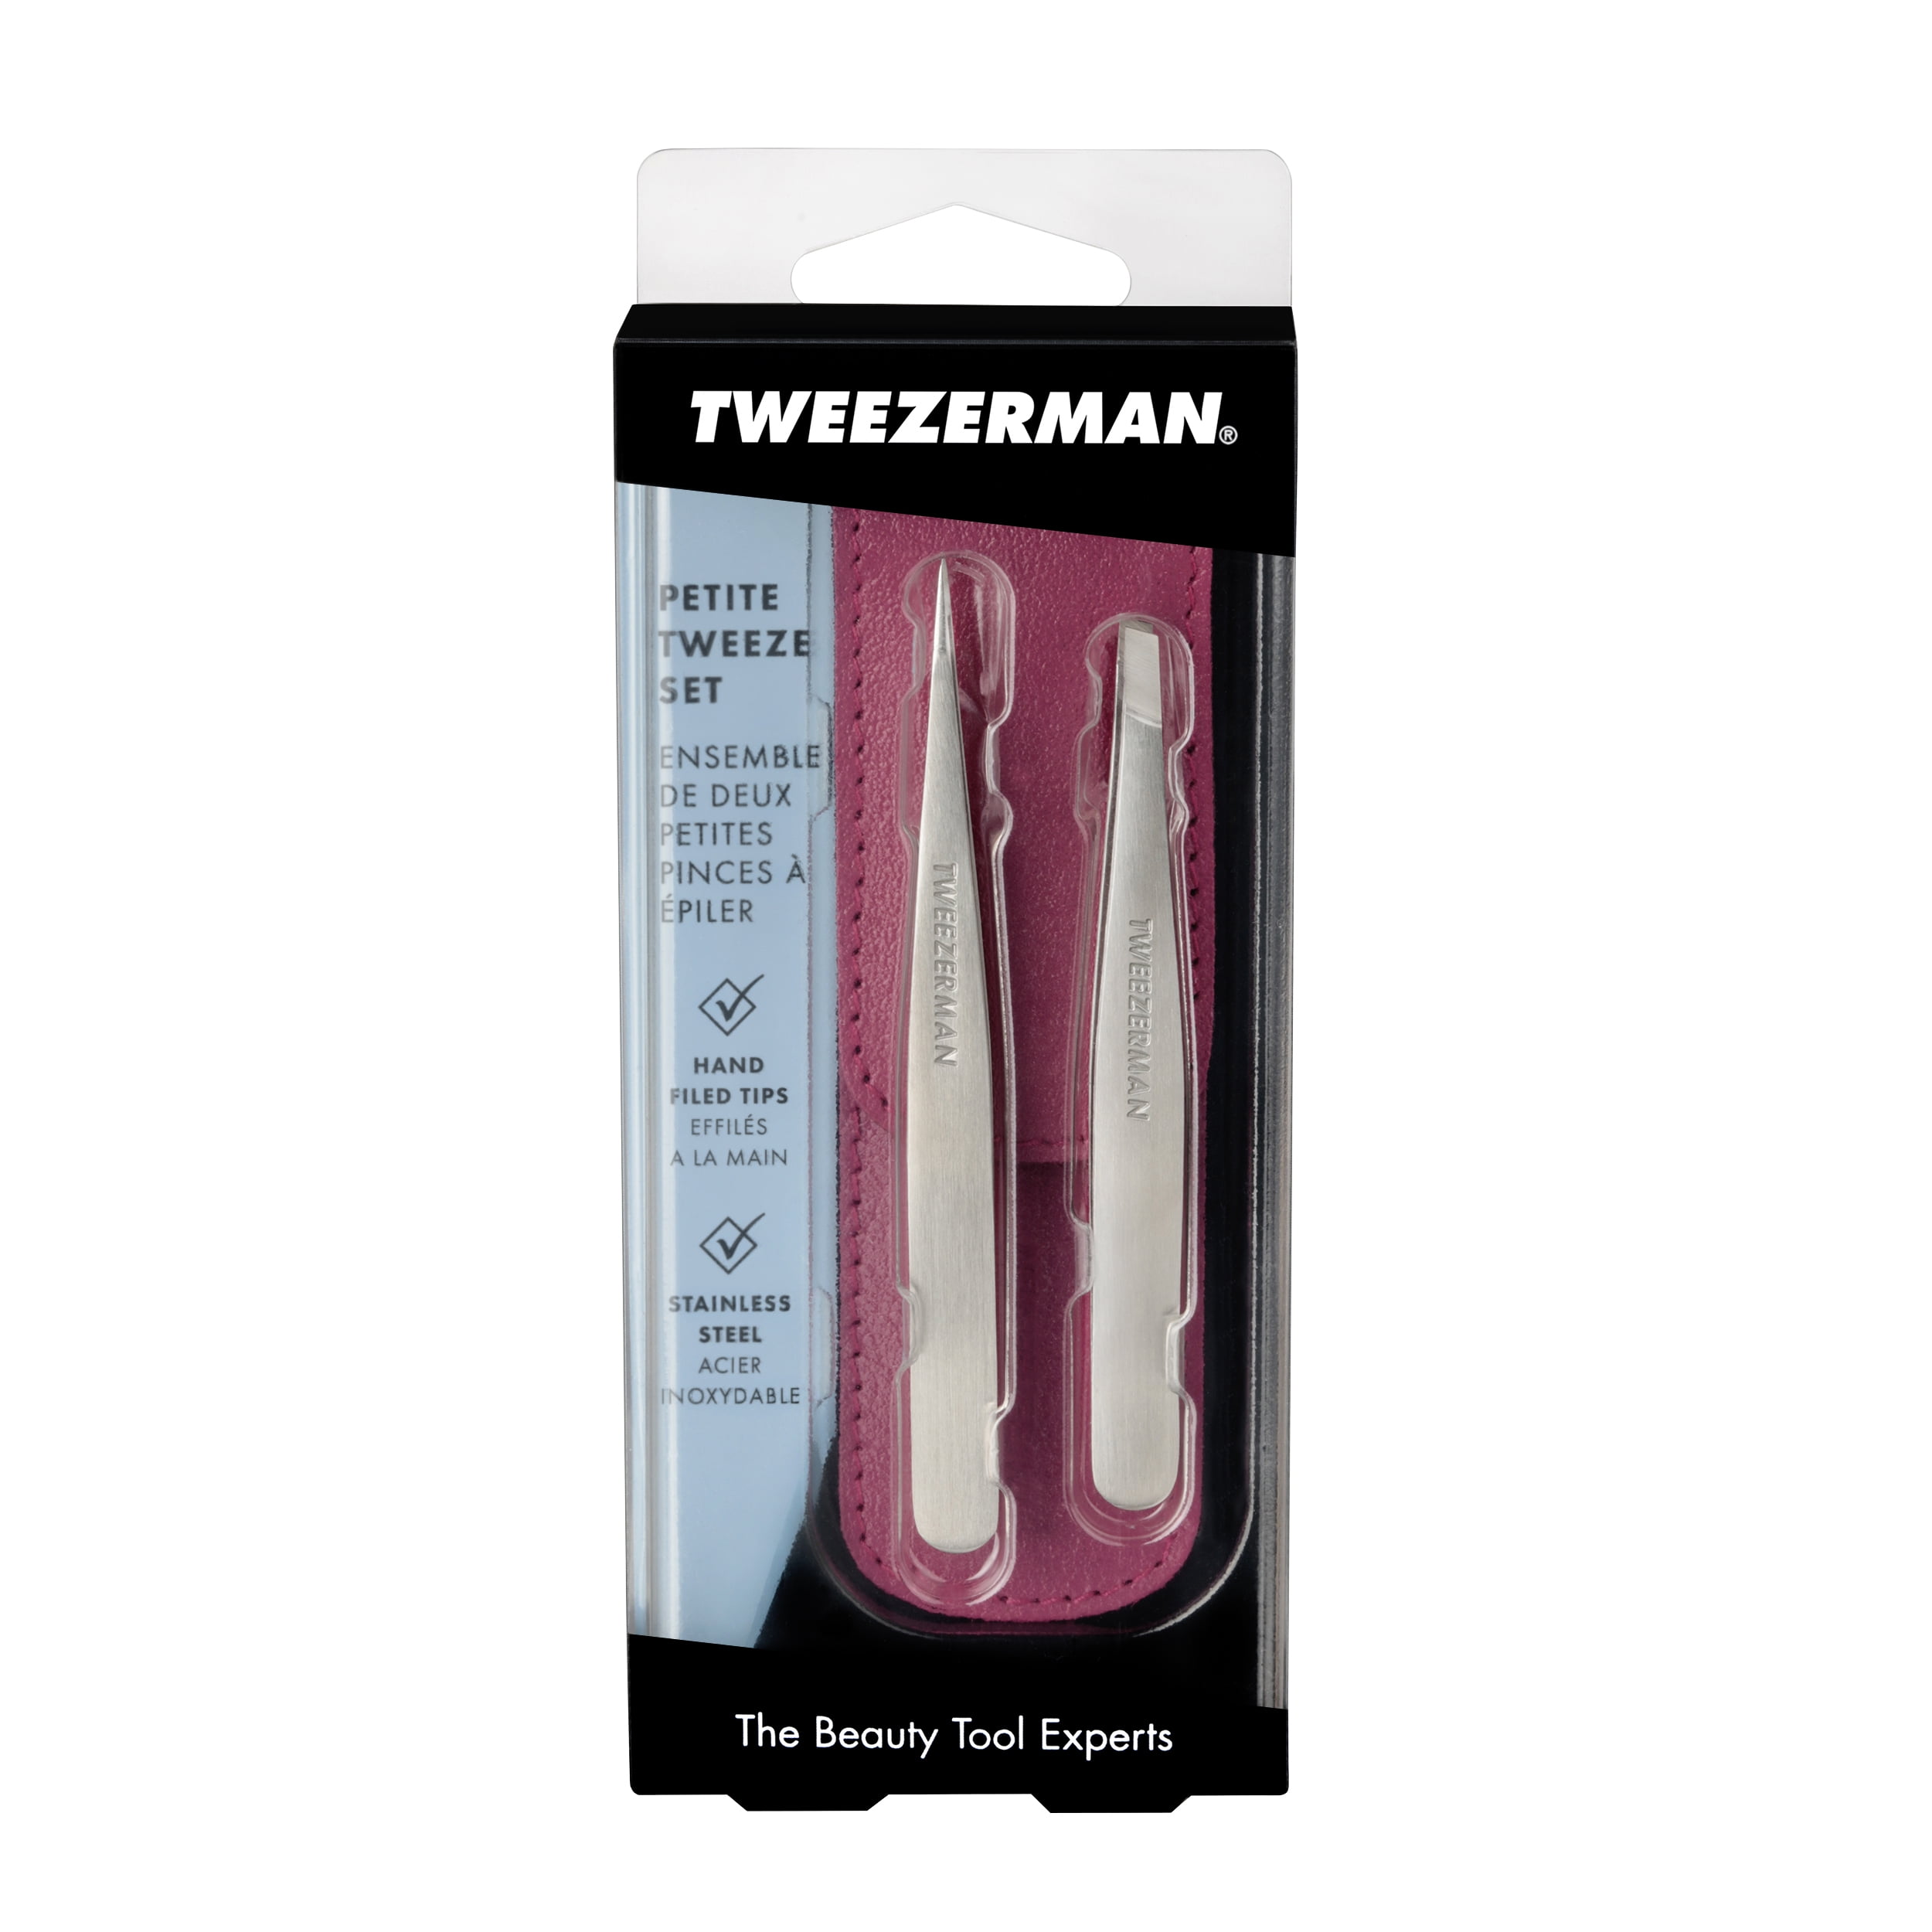 Tweezerman Petite Tweezer Set with Pink Case